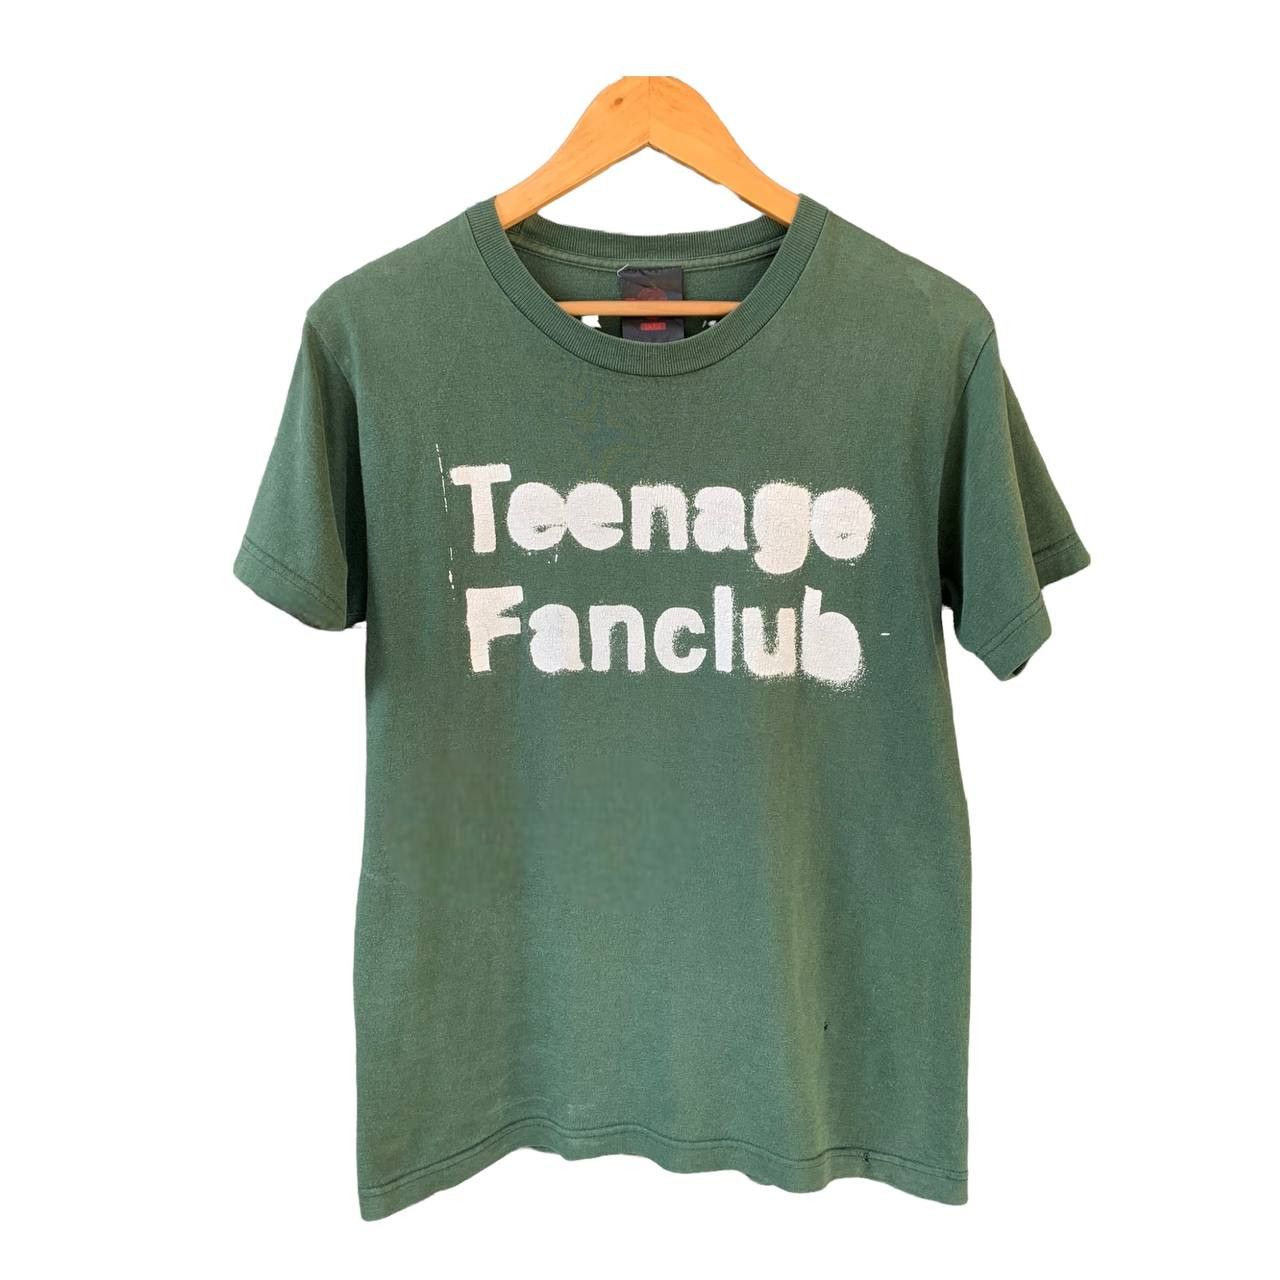 Vintage Vintage 90s Teenage Fanclub OG HL Reference | Grailed